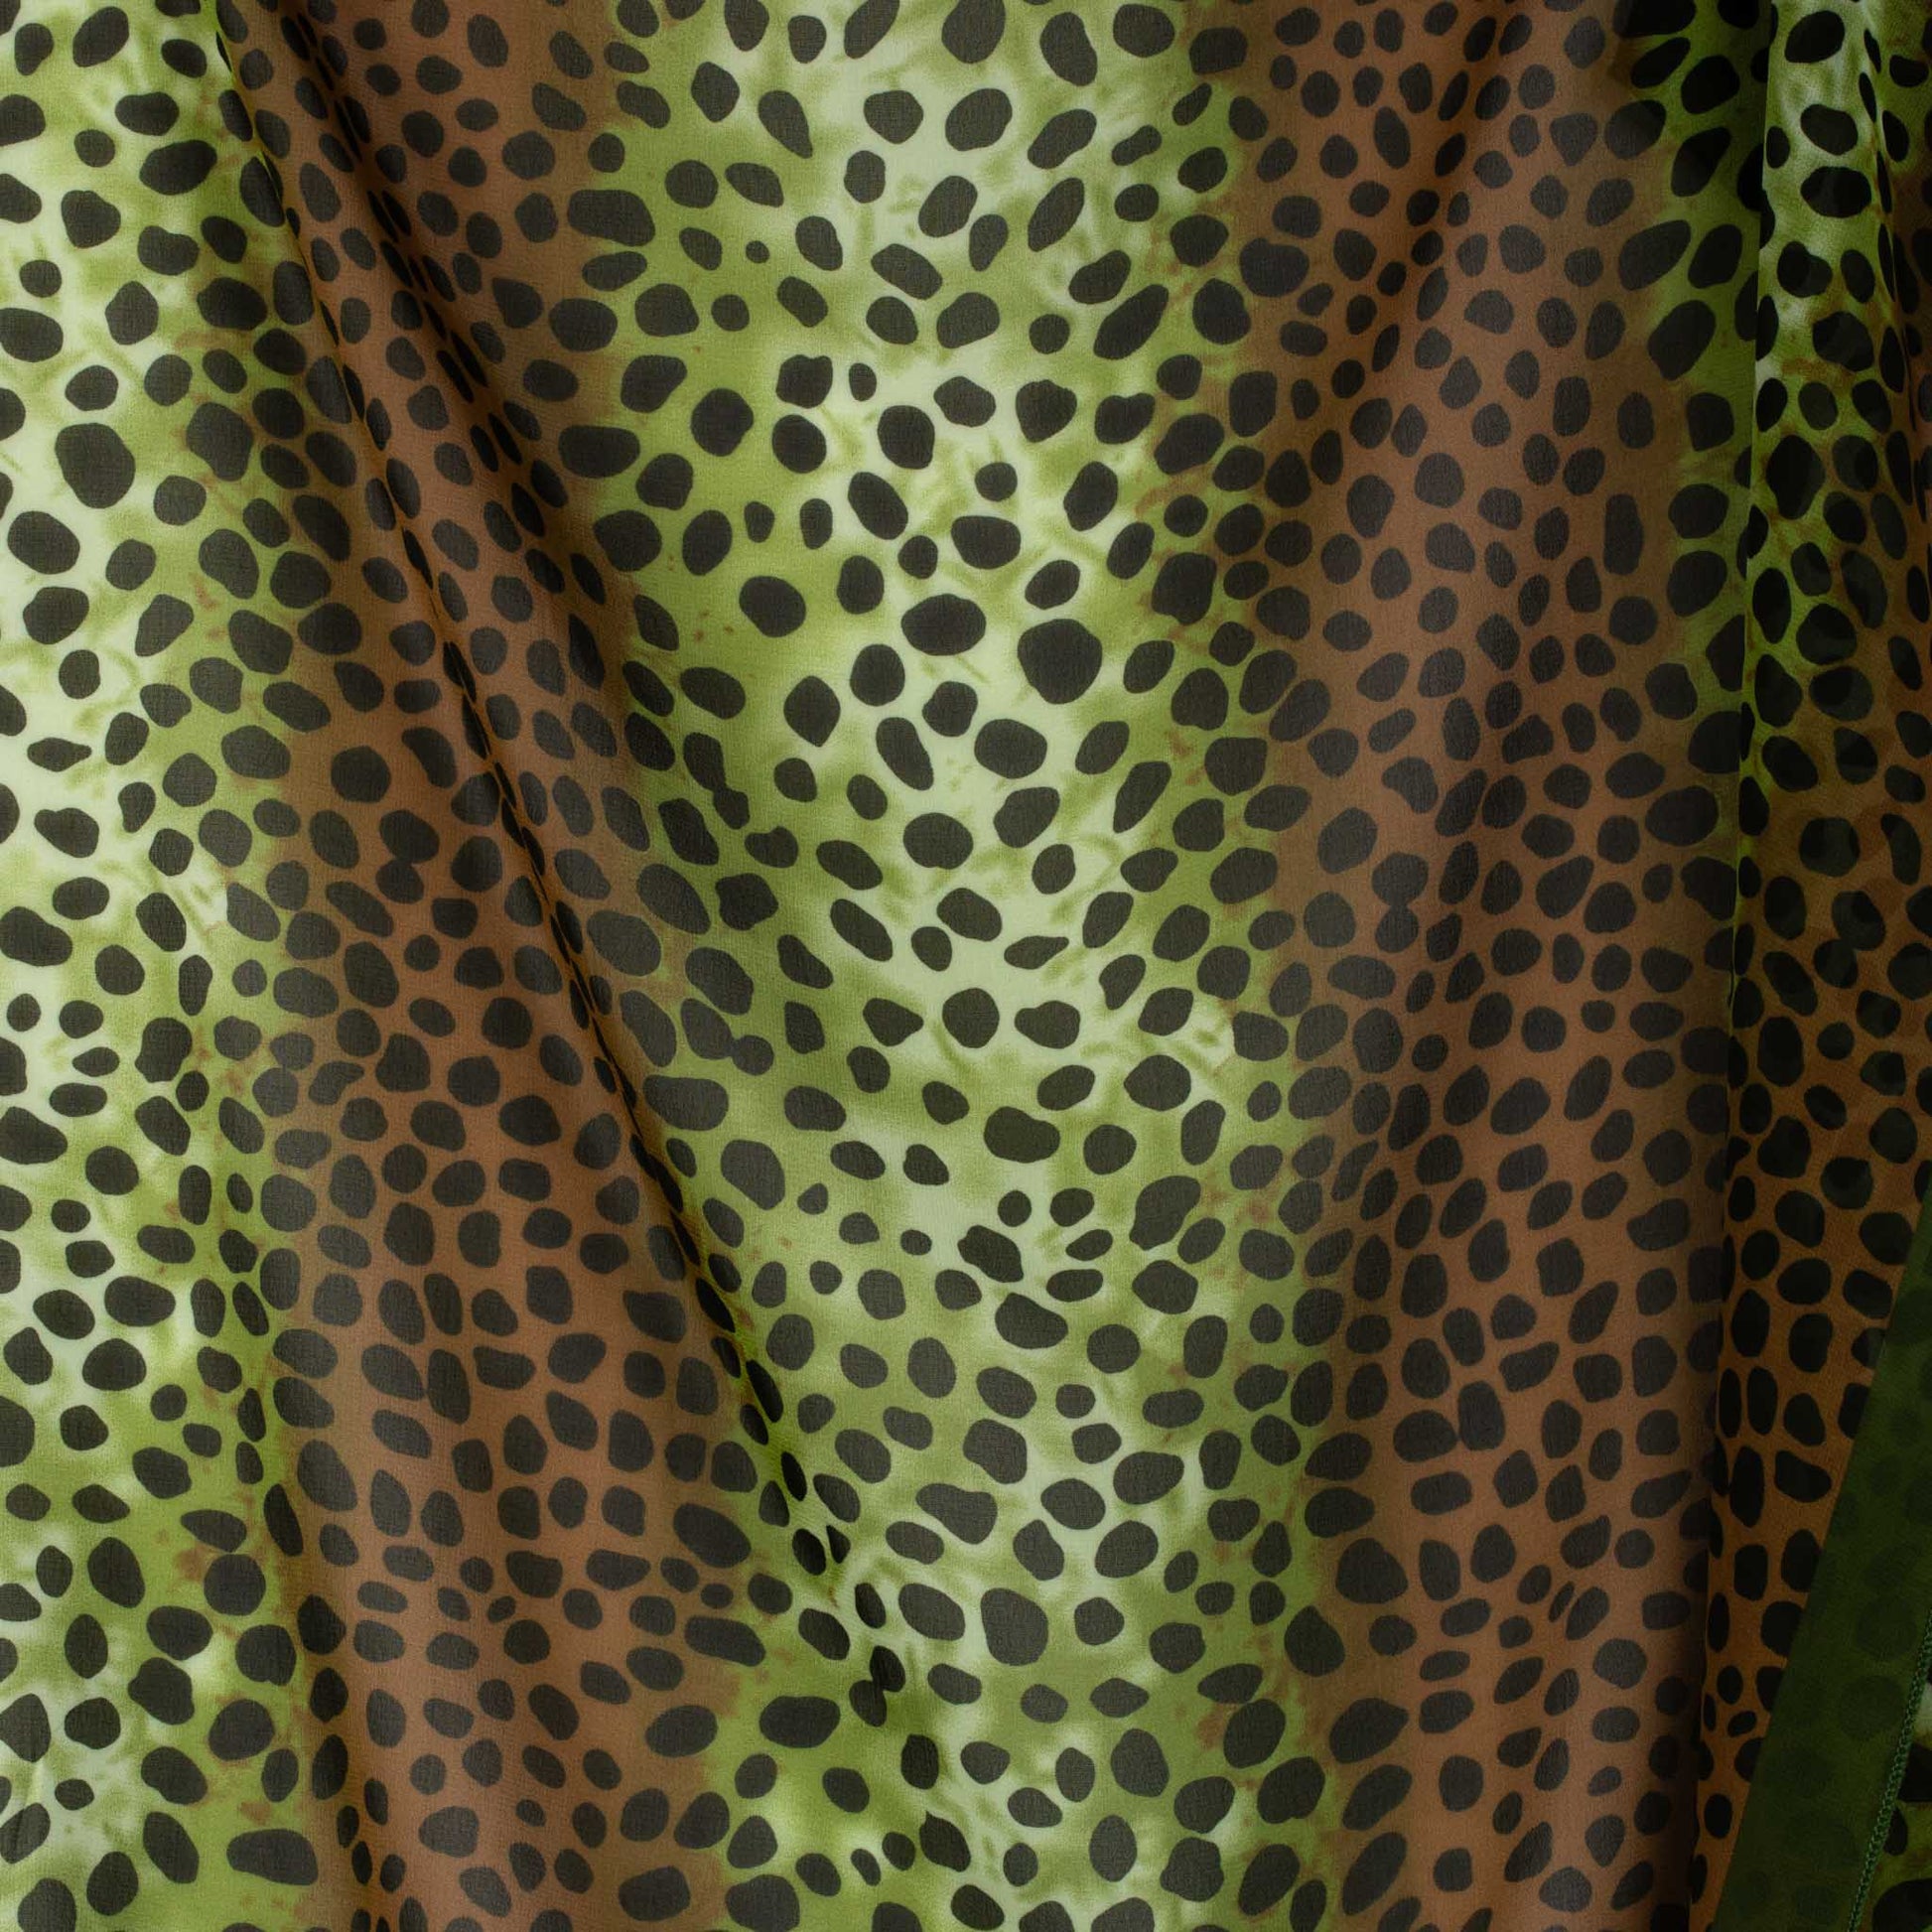 Eșarfă damă din mătase cu animal print în degrade, 65 x 65 cm - Verde, Maro